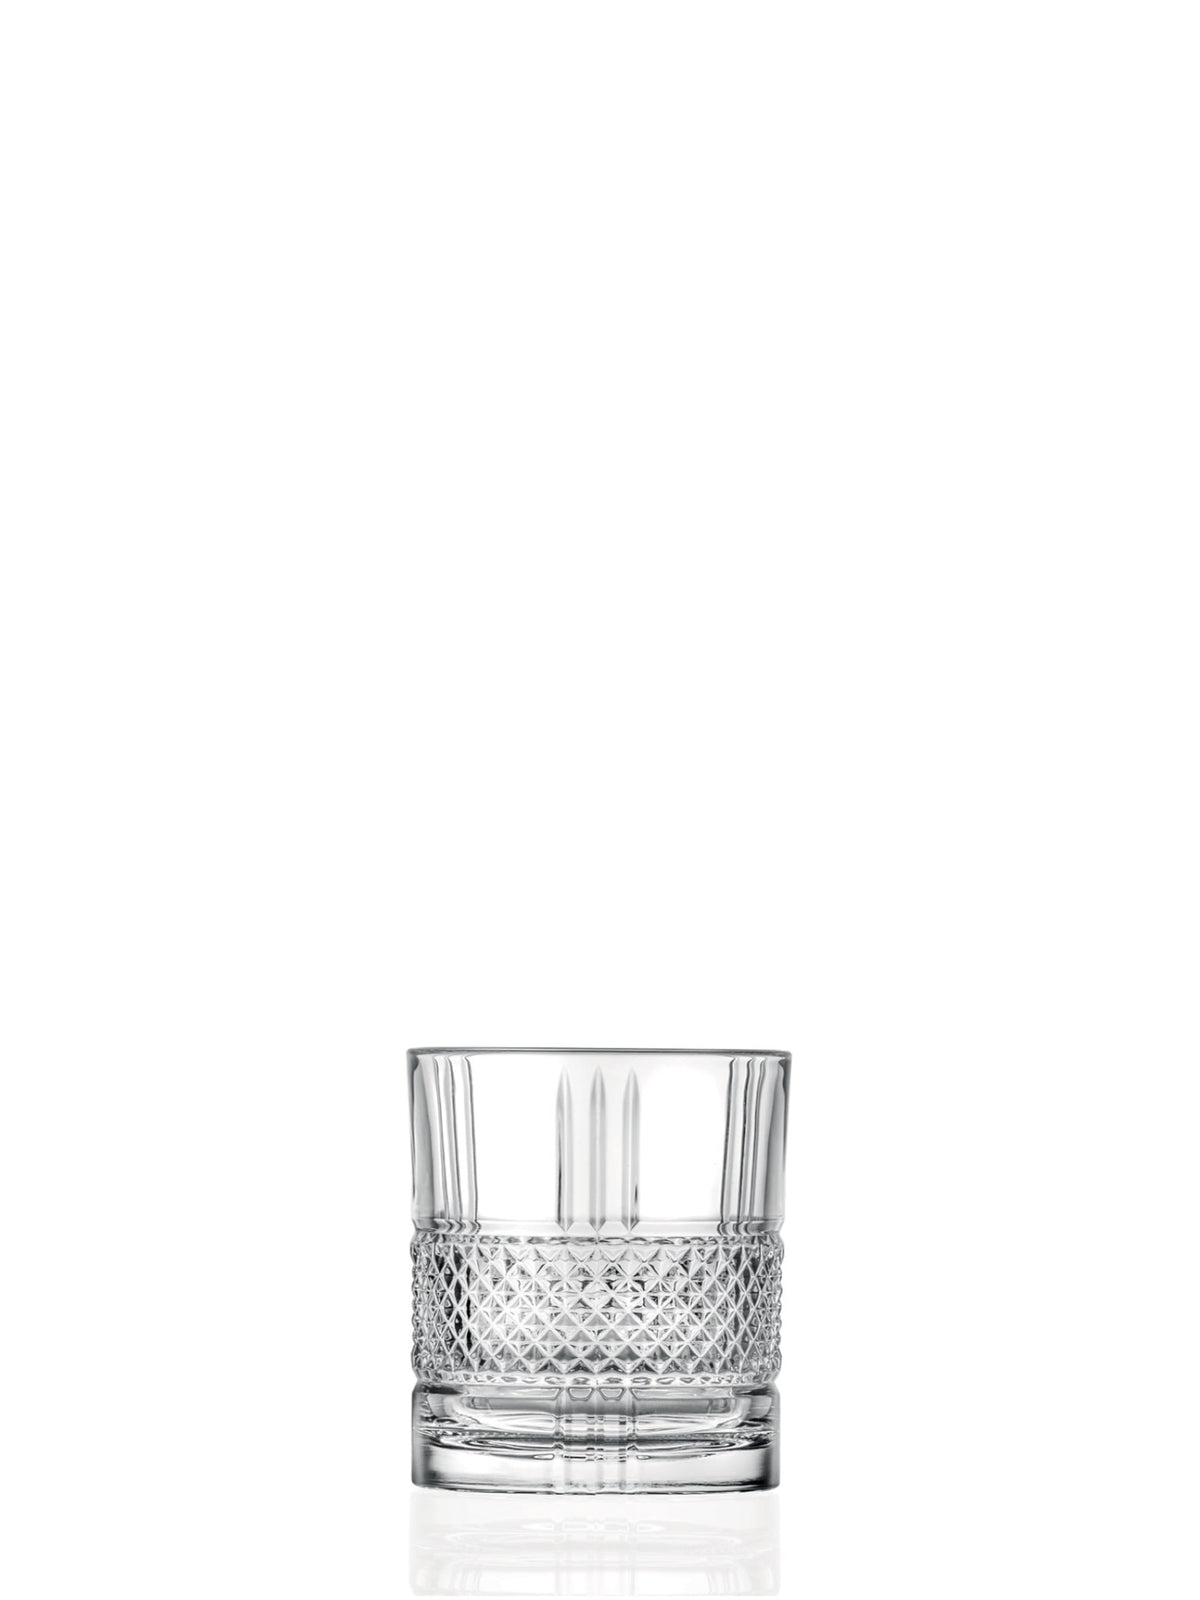 RCR Brillante Lowball - eine elegante Wahl für Ihre Lieblingscocktails, mit einem langlebigen und stilvollen Design